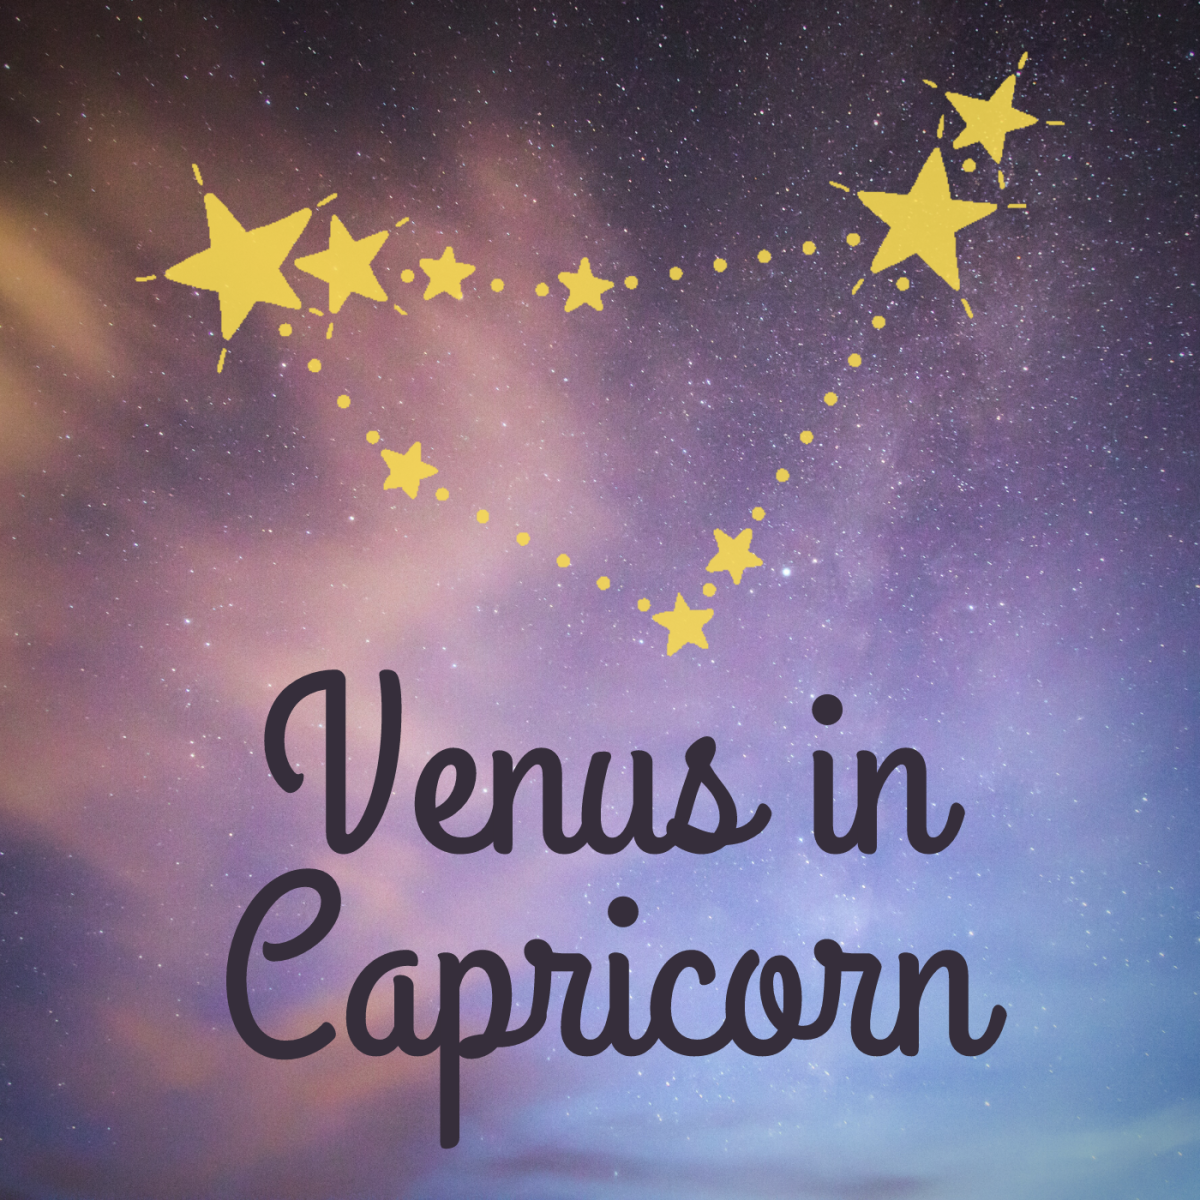 Venus in Capricorn Explained